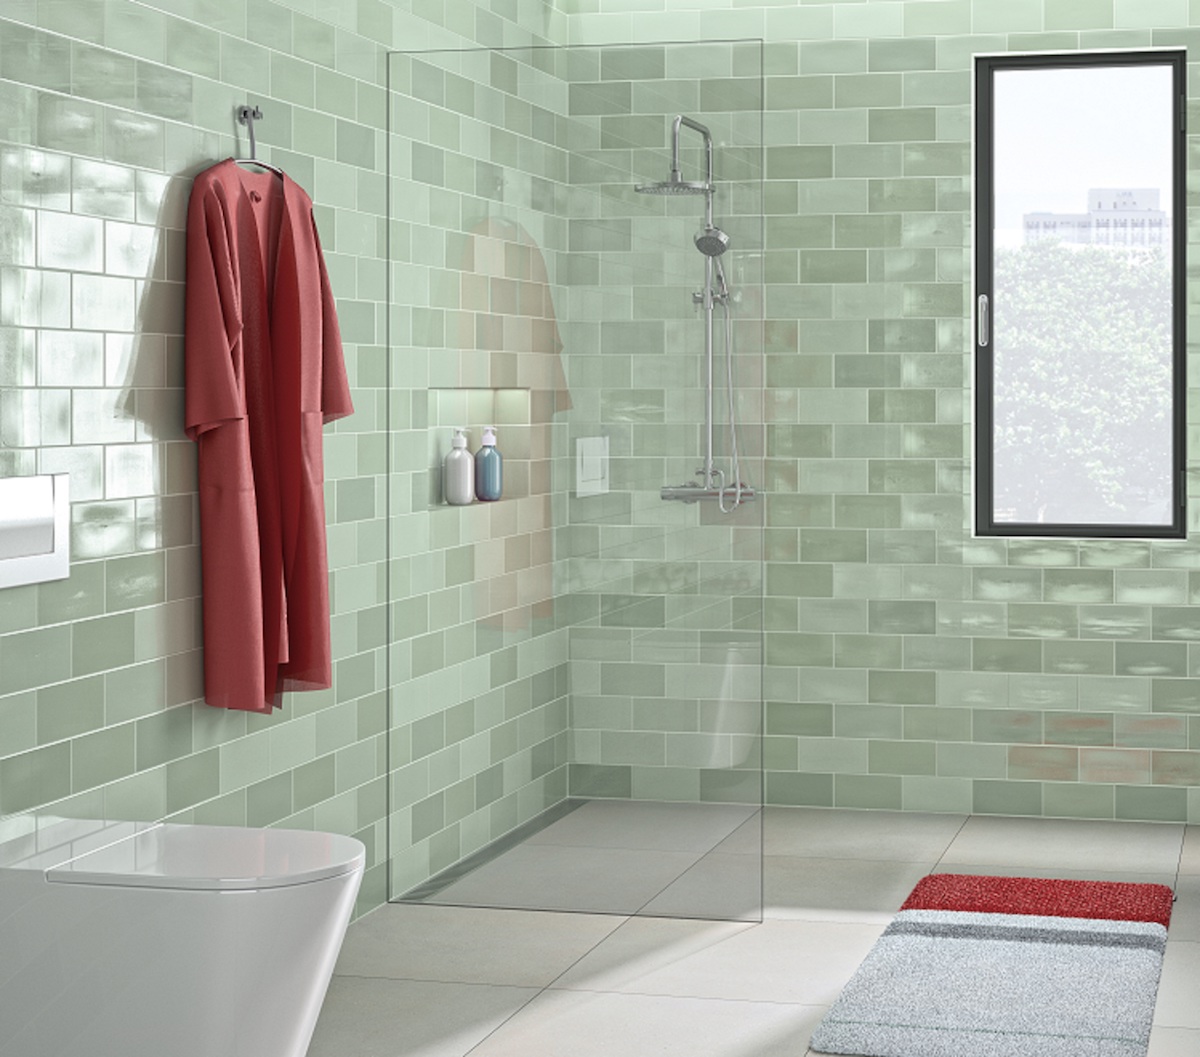 FotoInspiratie voor de badkamerwanden: kleurrijke wandtegels en panelen